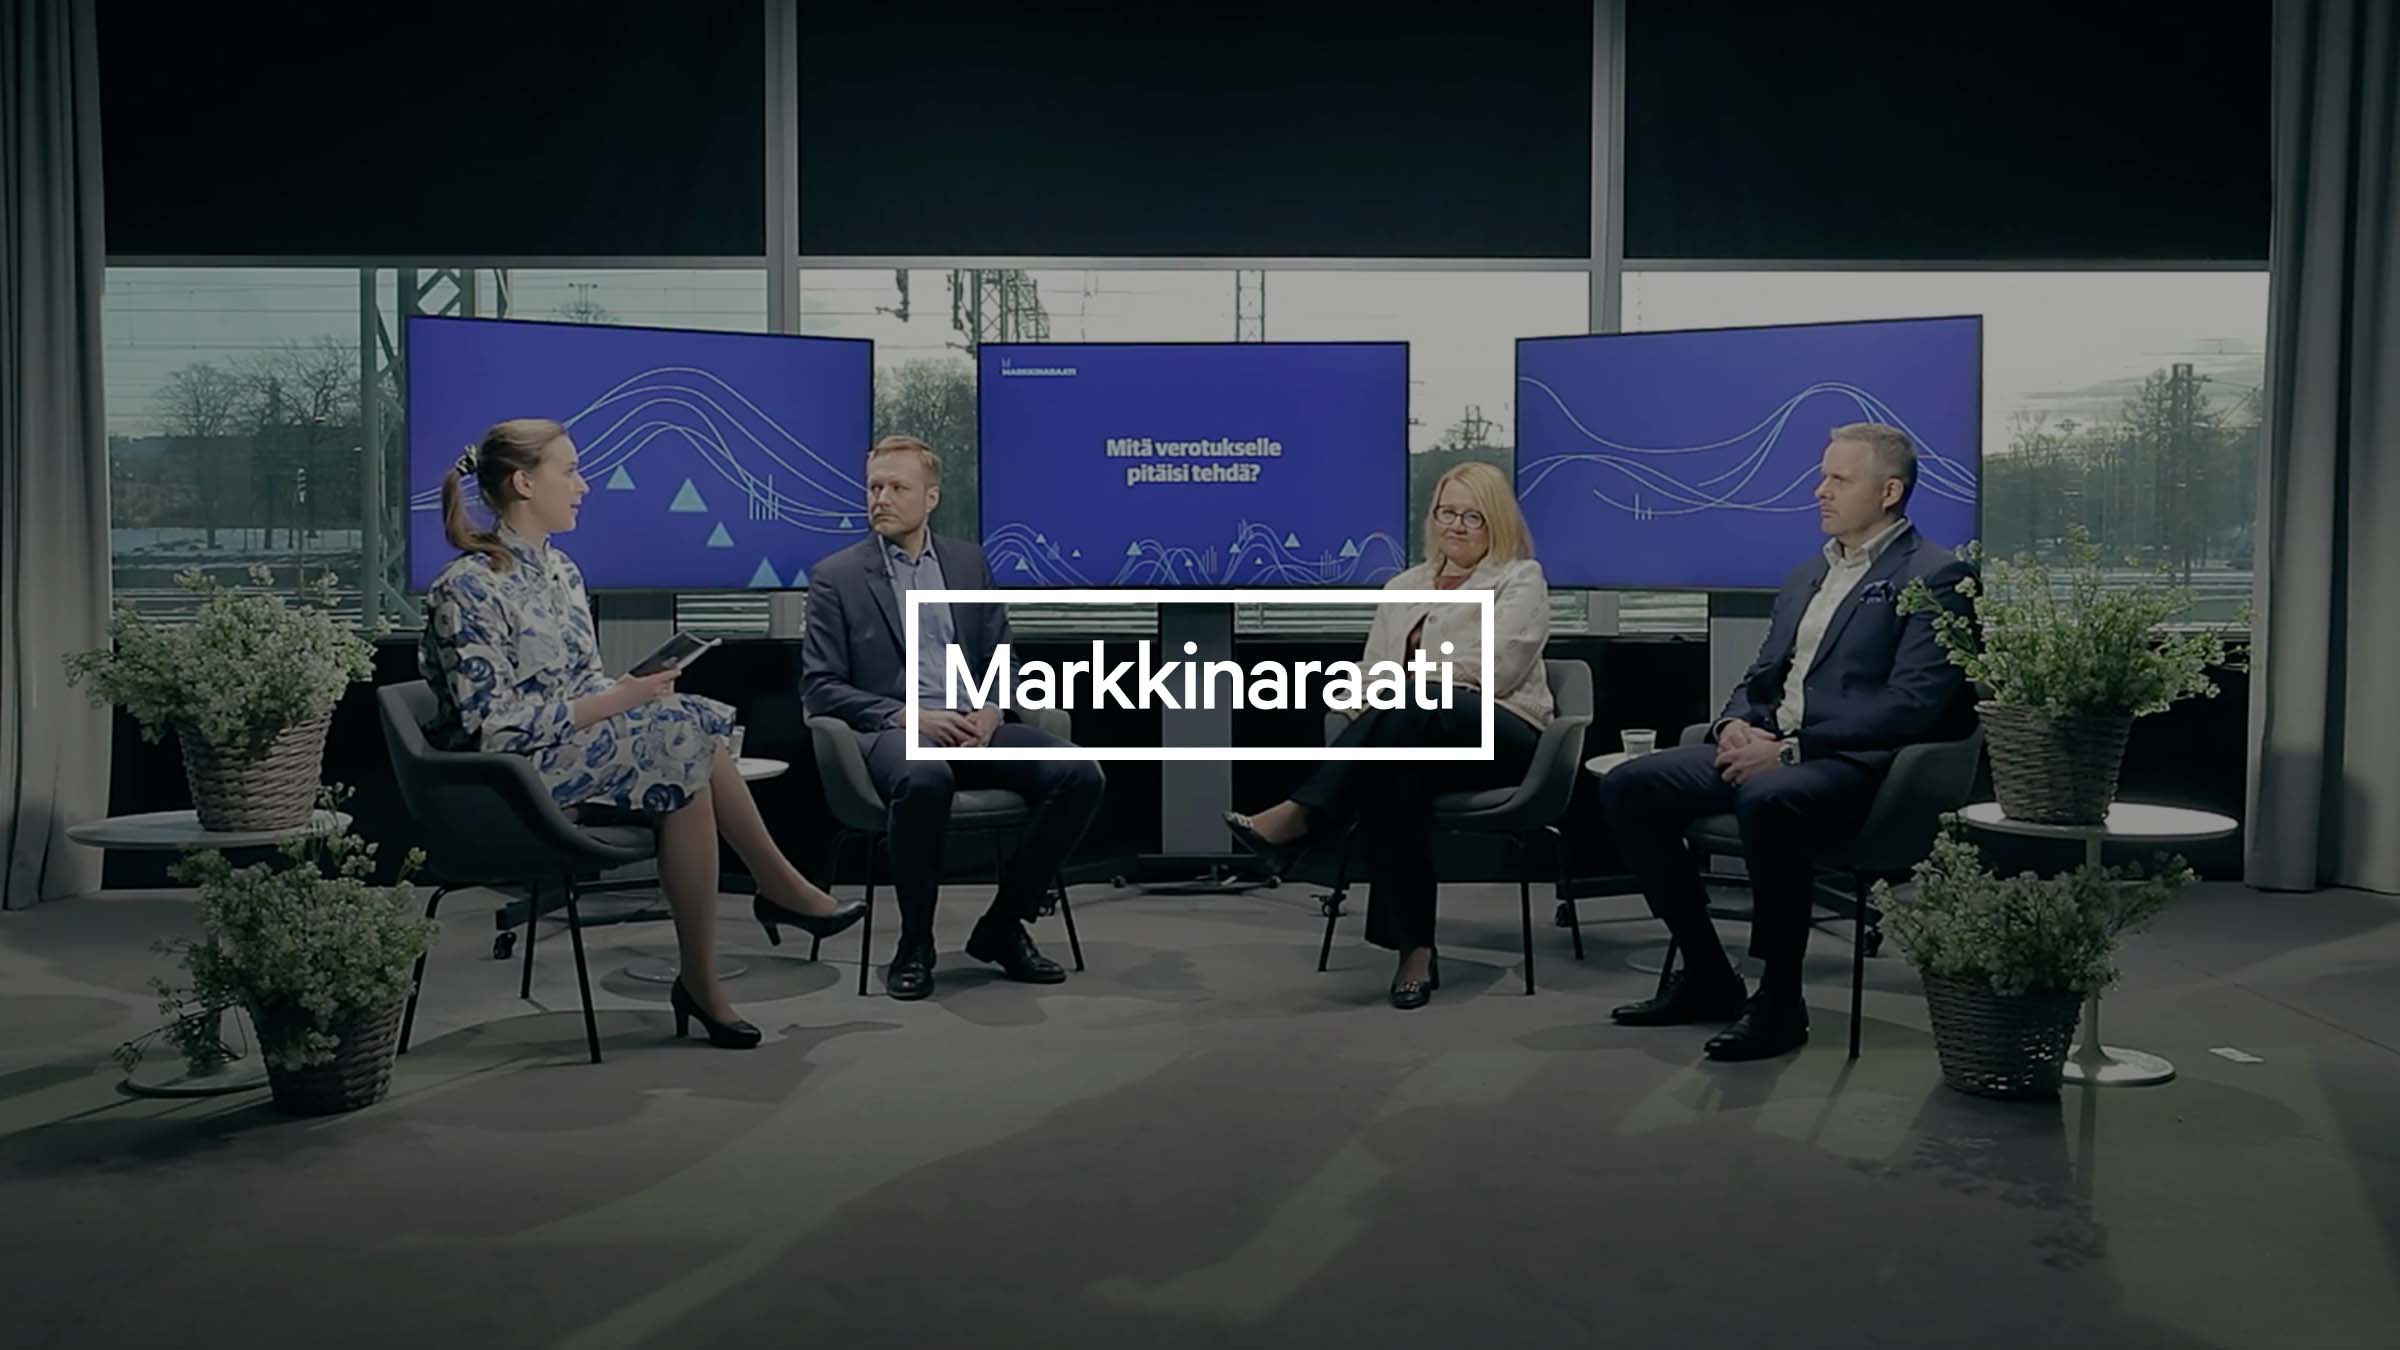 Markkinaraati: När företagarna mår bra, mår också Finland bra